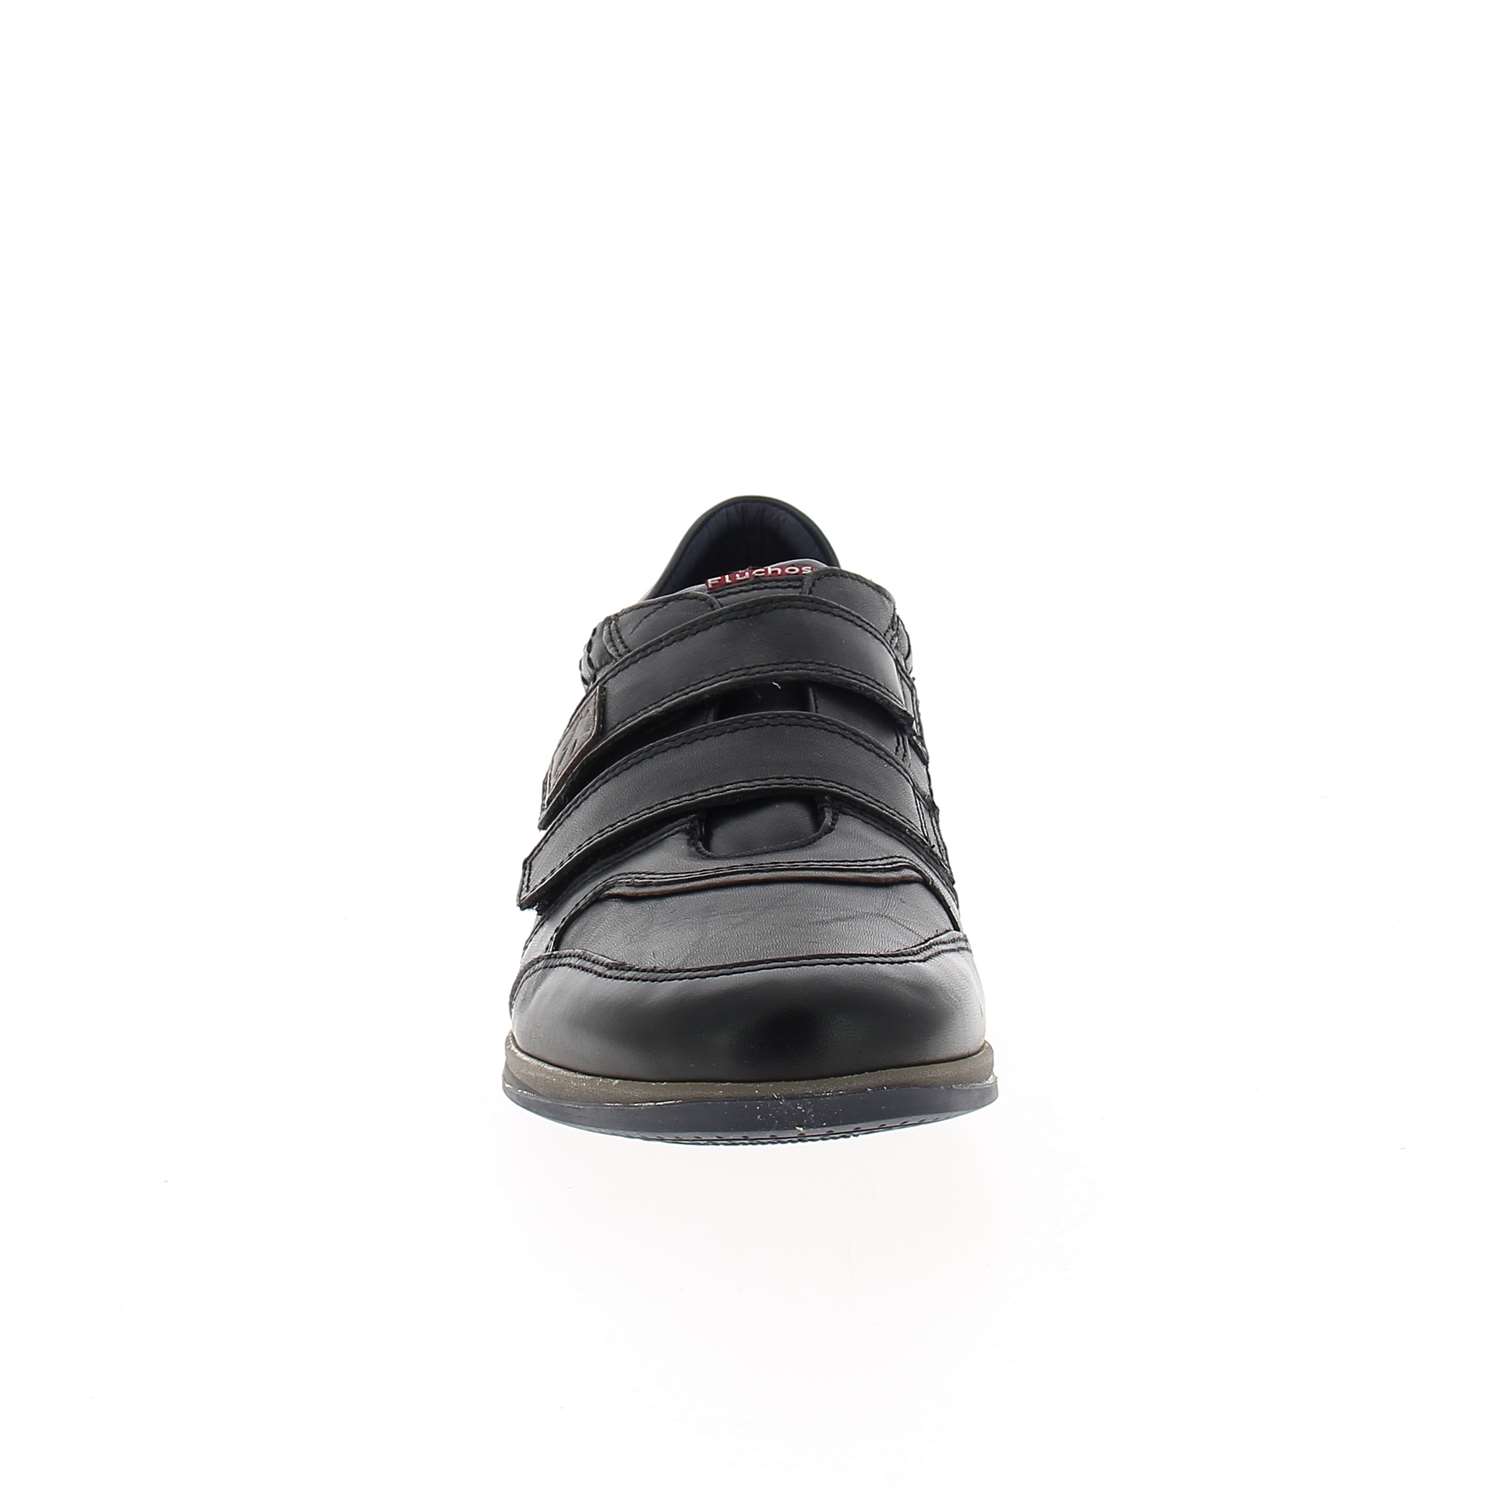 03 - FLUMAVEL - FLUCHOS - Chaussures à lacets - Cuir